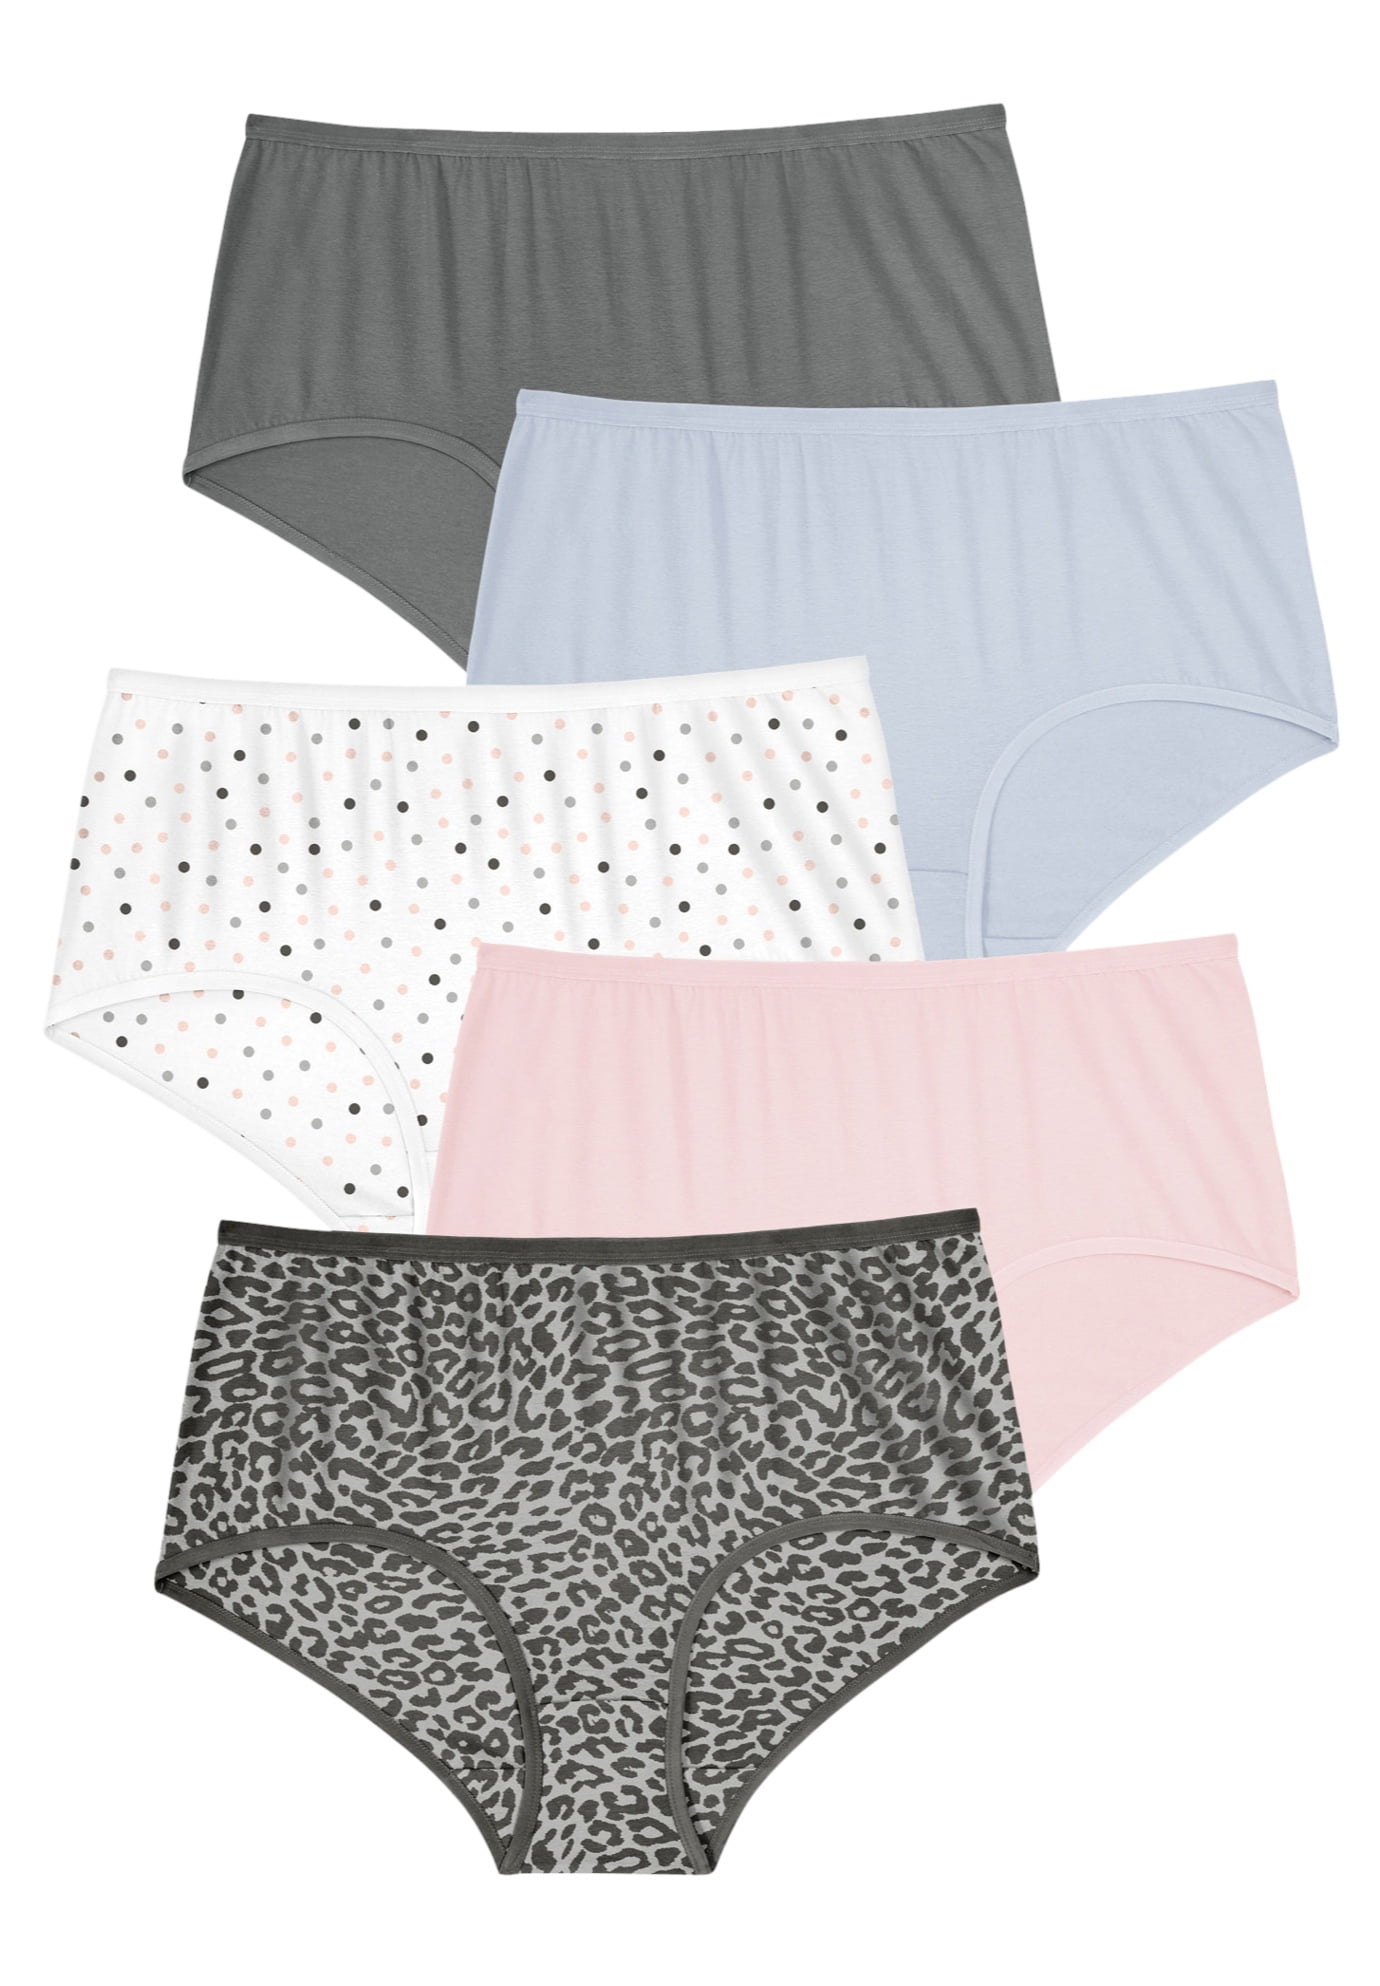 Comfort Choice Women's Plus Size Stretch Cotton Brief 5-Pack Underwear 